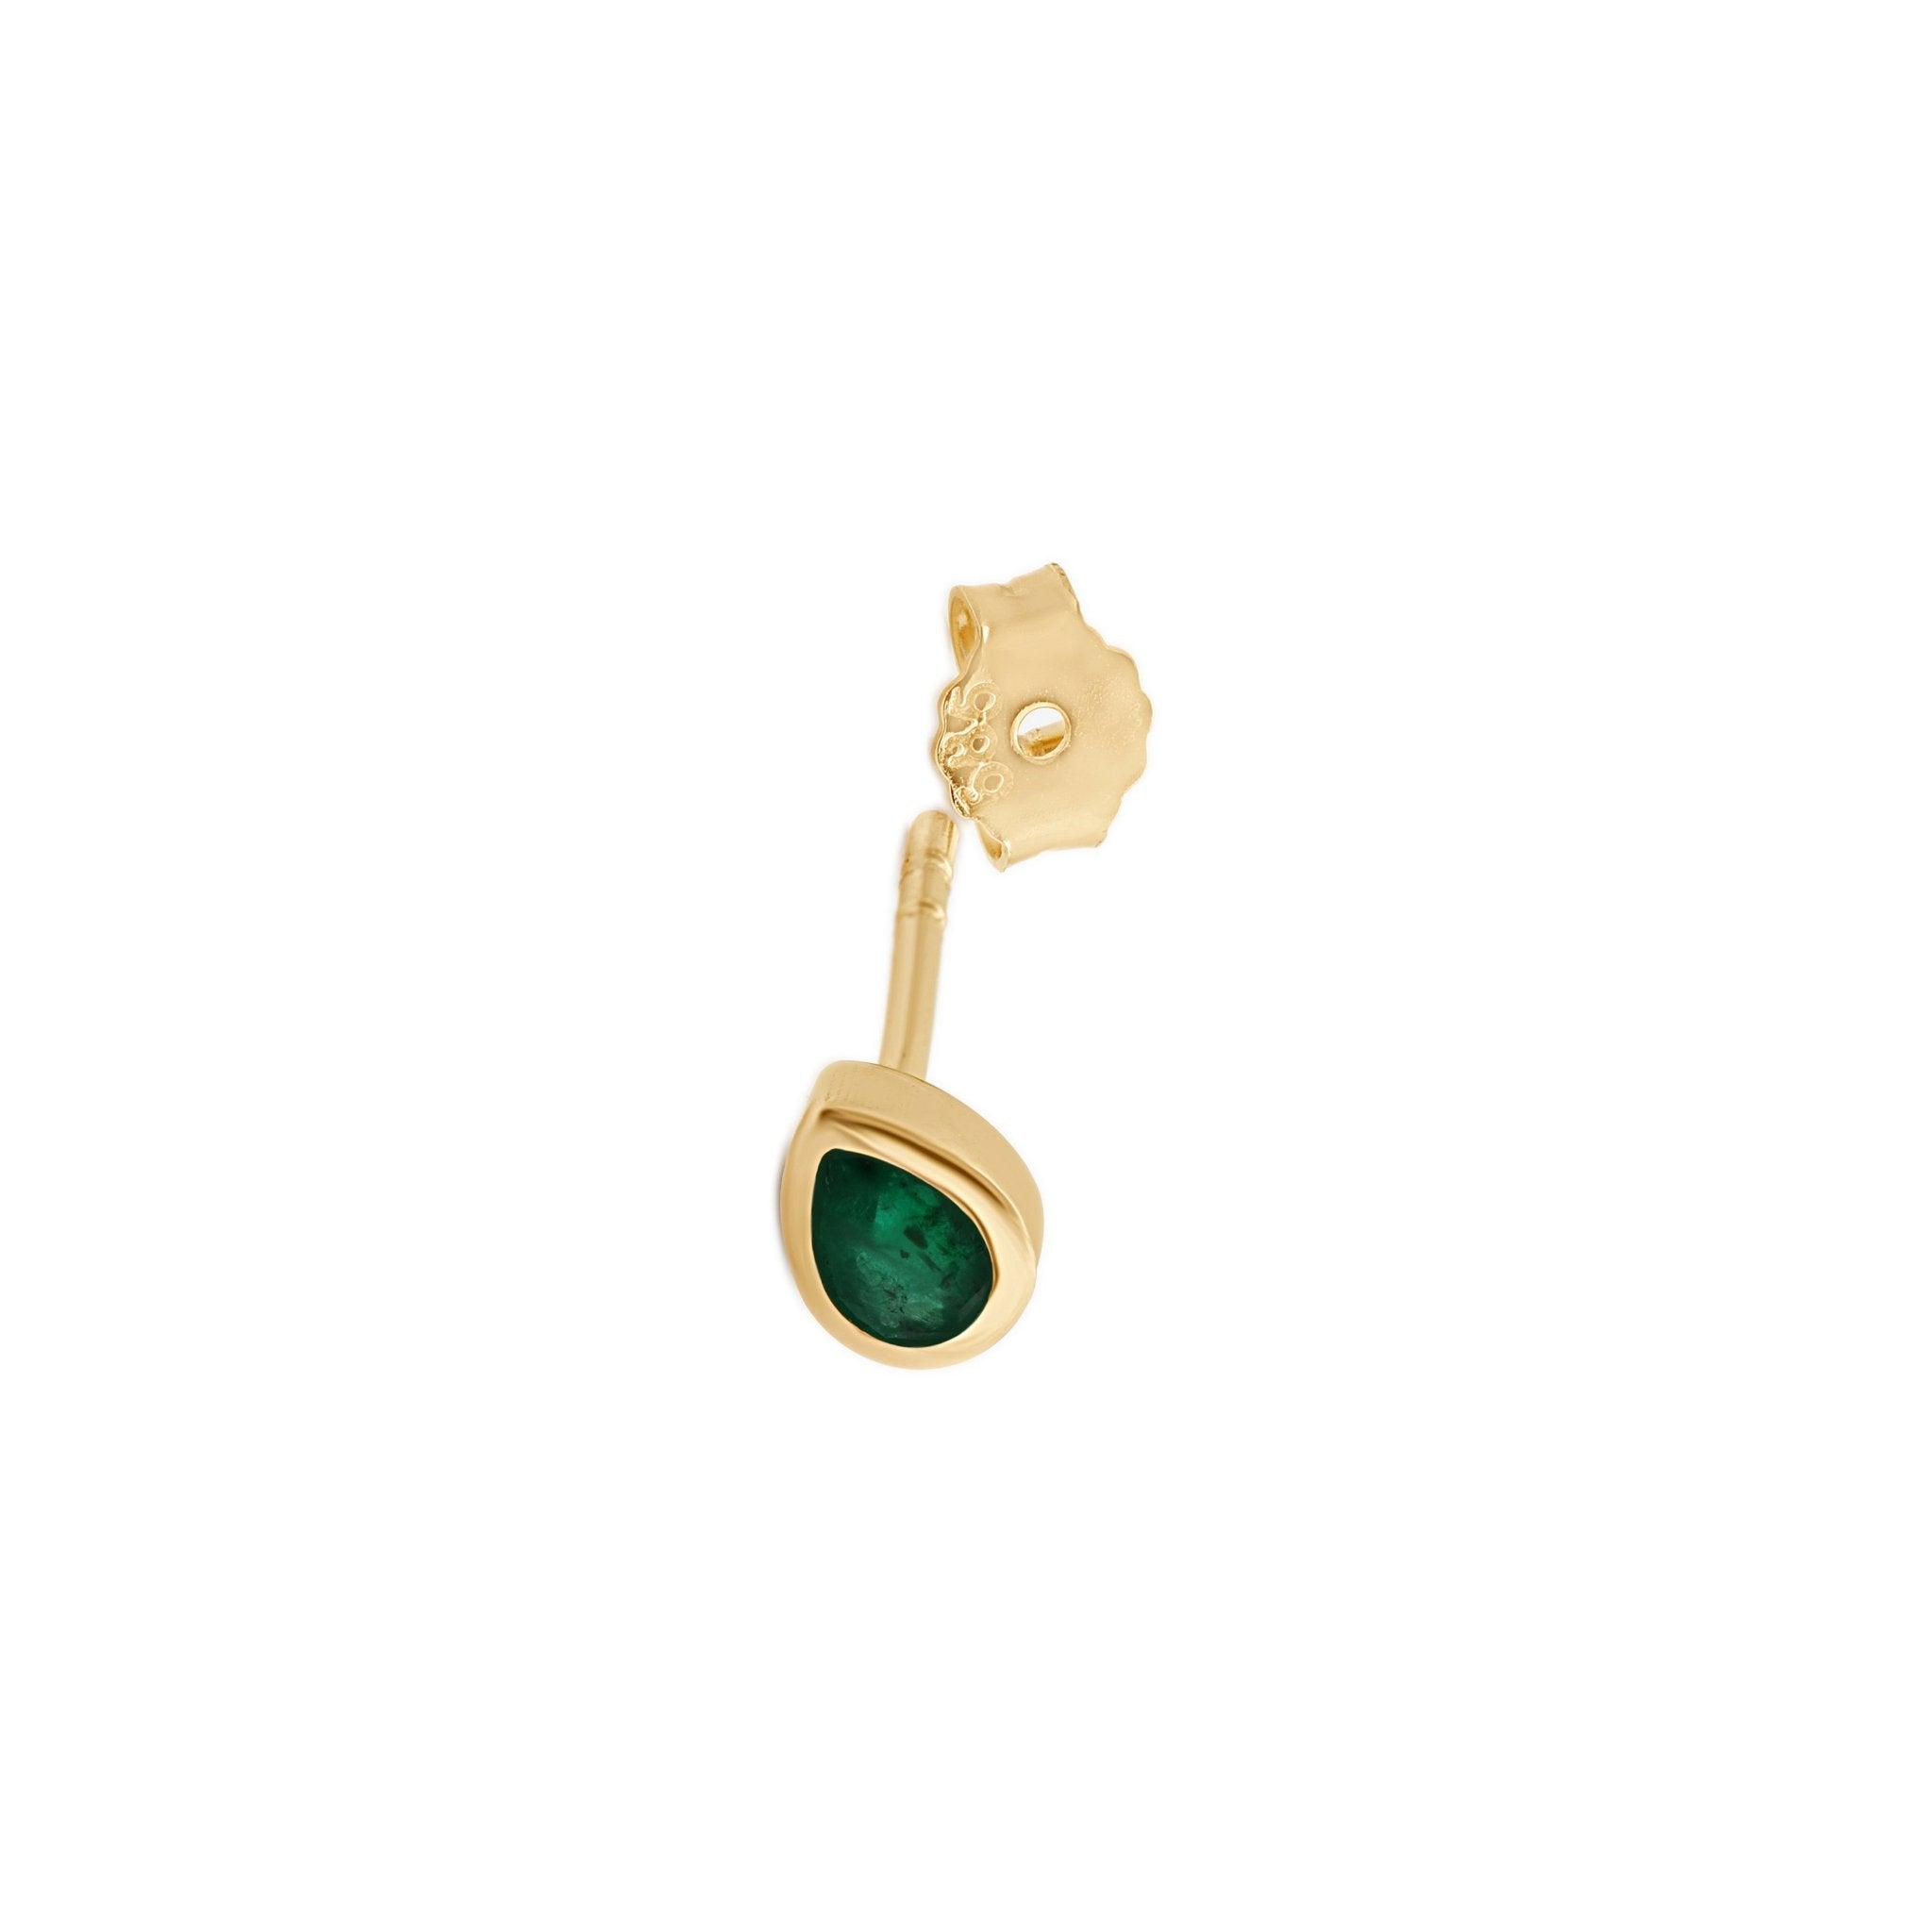 Pear Emerald Bezel Set Earring Earrings Estella Collection #product_description# 17987 14k Birthstone Birthstone Earrings #tag4# #tag5# #tag6# #tag7# #tag8# #tag9# #tag10#